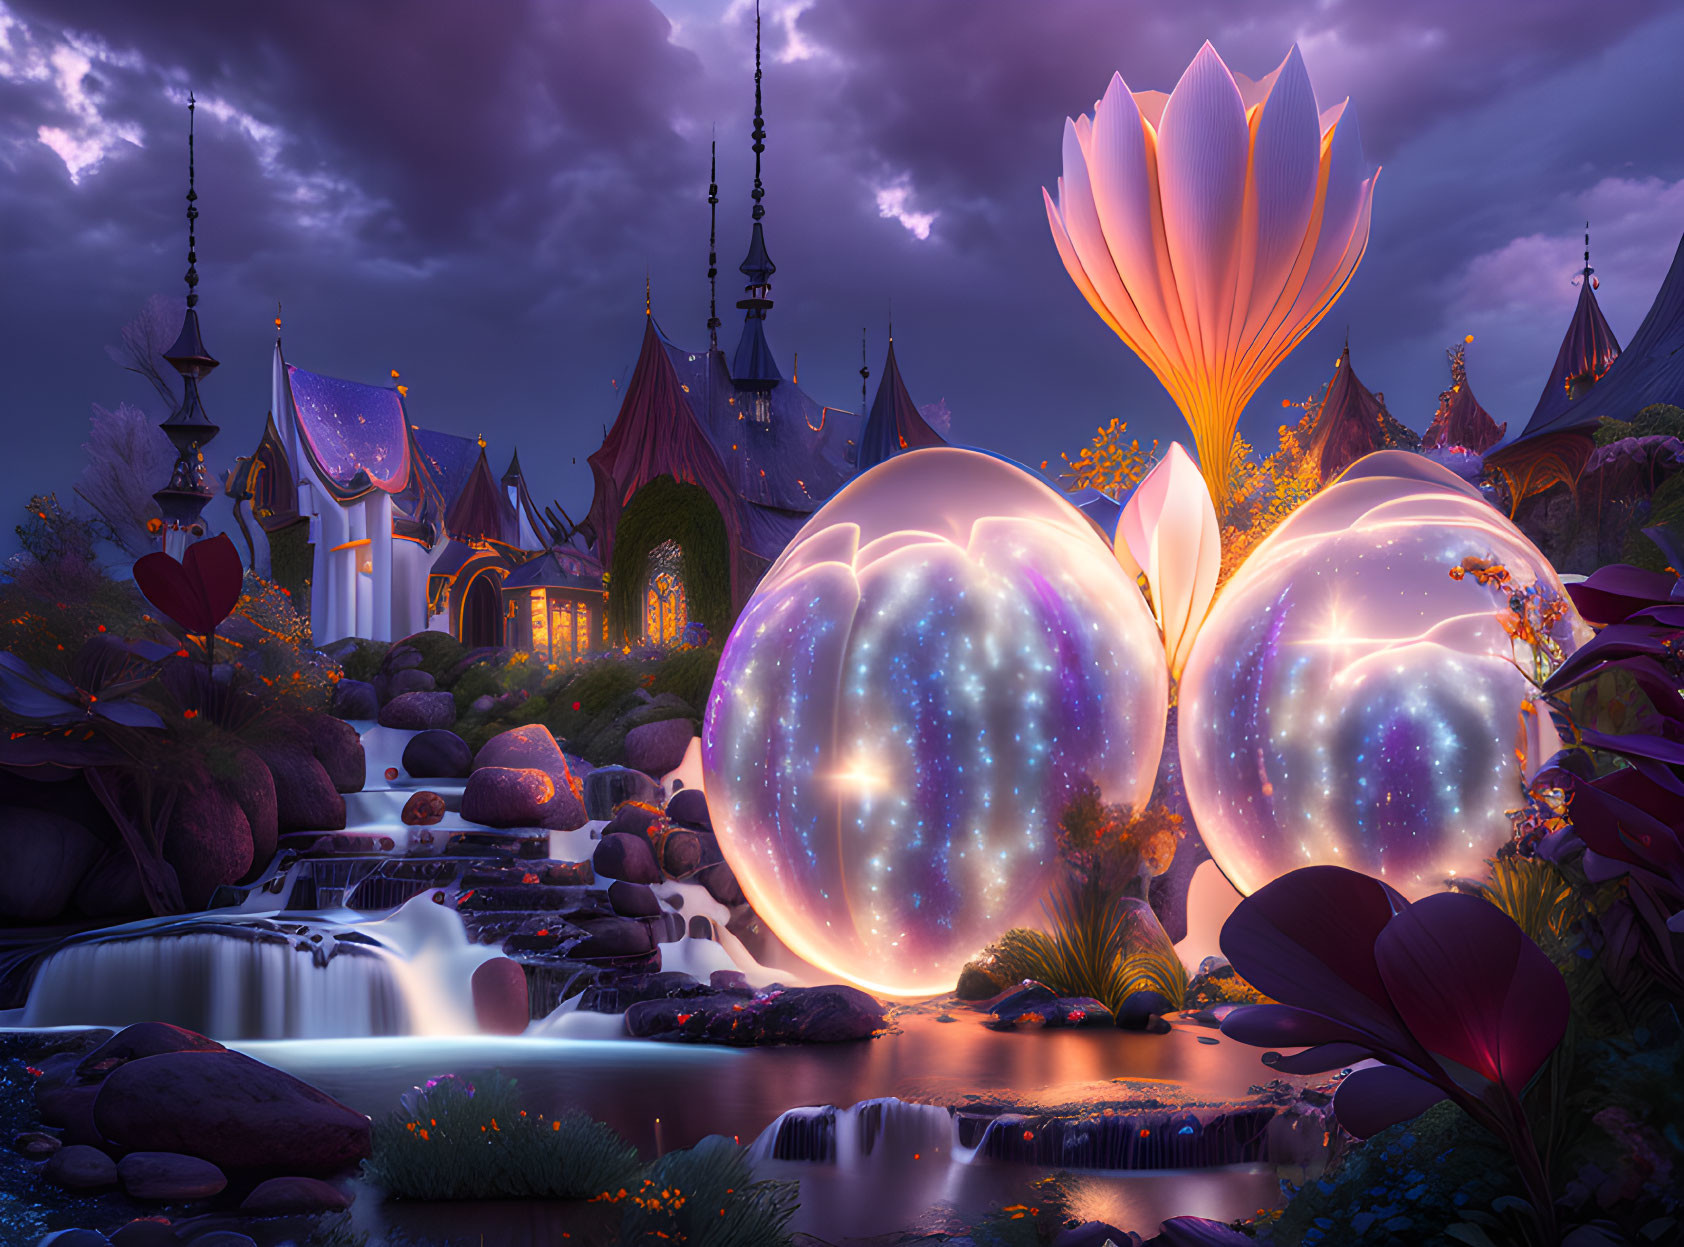 Luminous orbs, oversized flower, waterfalls in fantastical dusk landscape